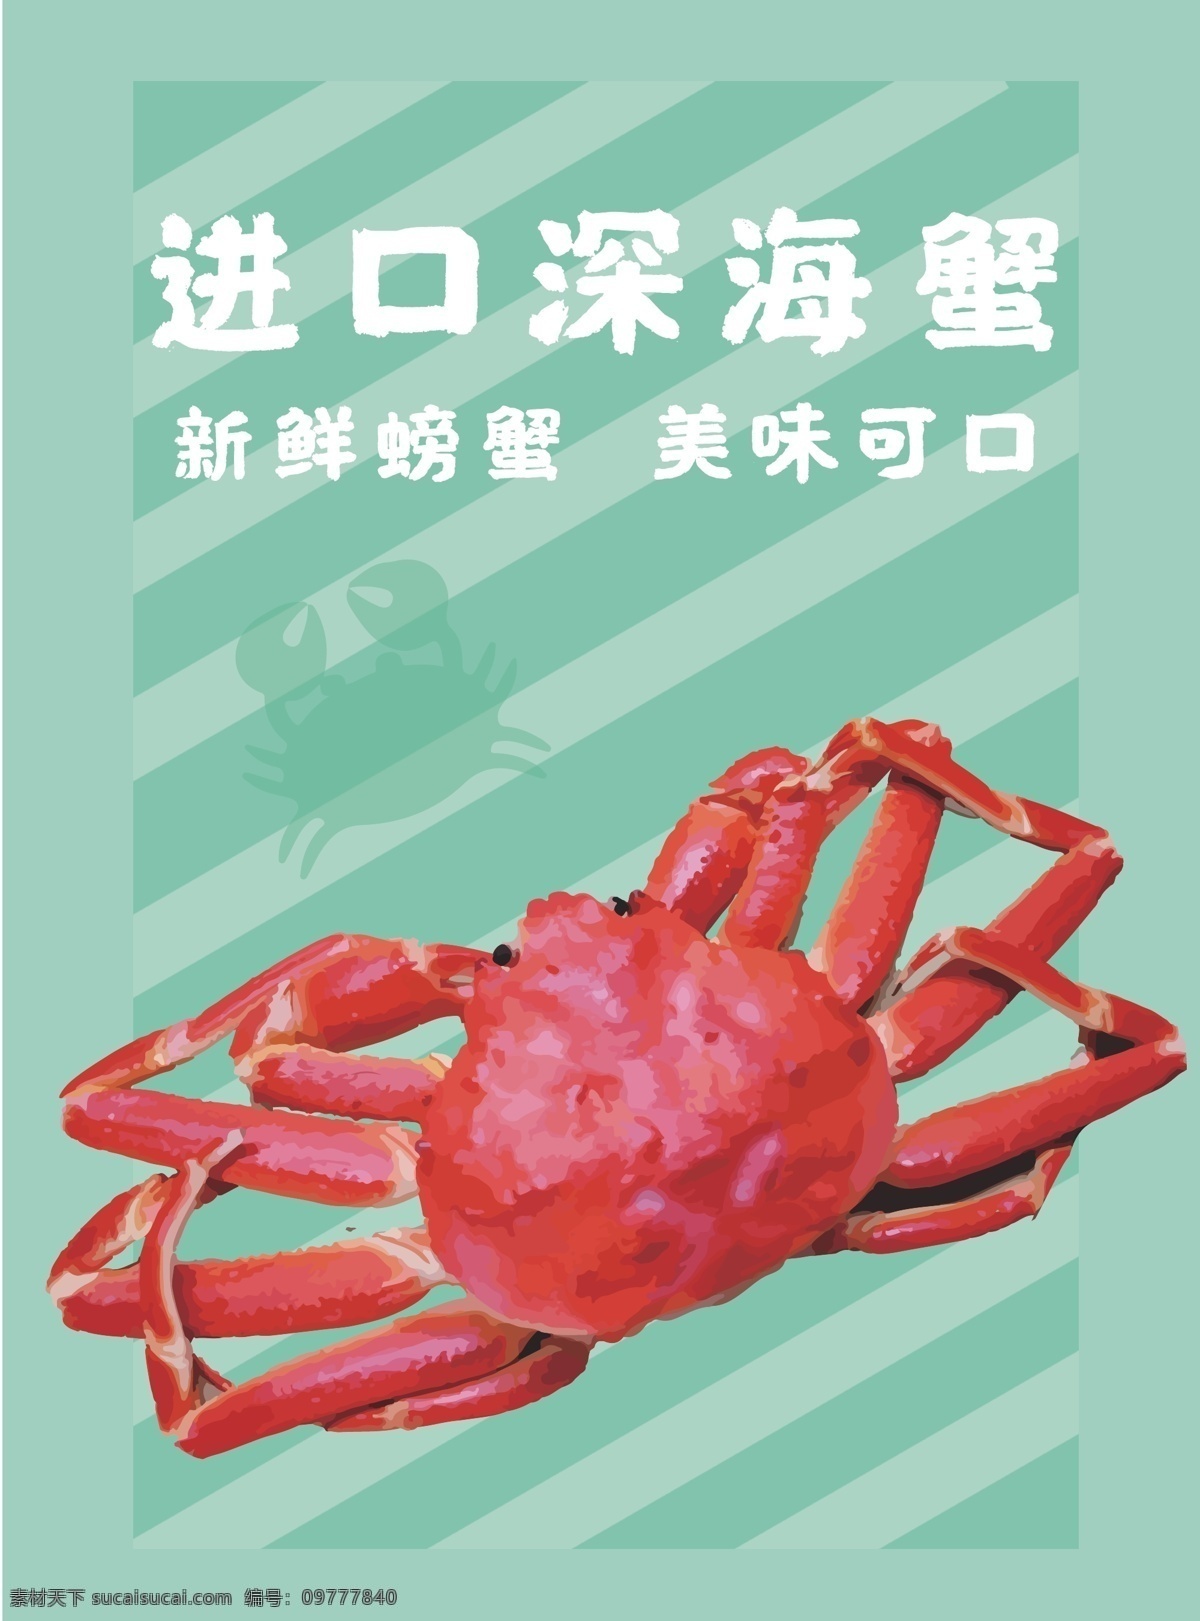 海鲜 美食 进口 深海 螃蟹 包装 插画